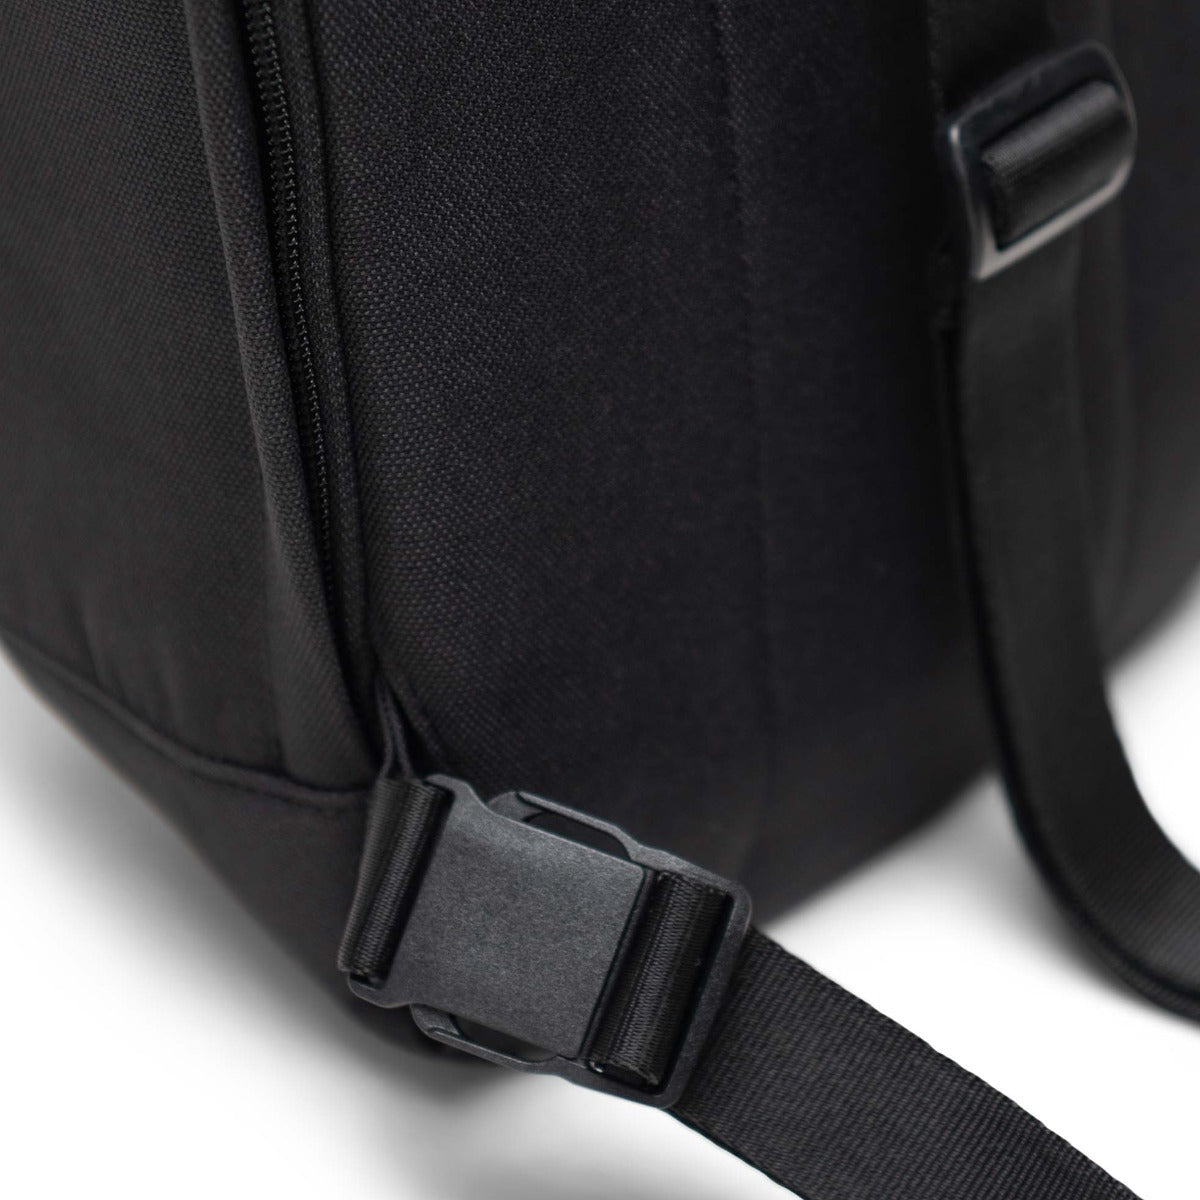 Herschel Retreat Sling Bag in Black